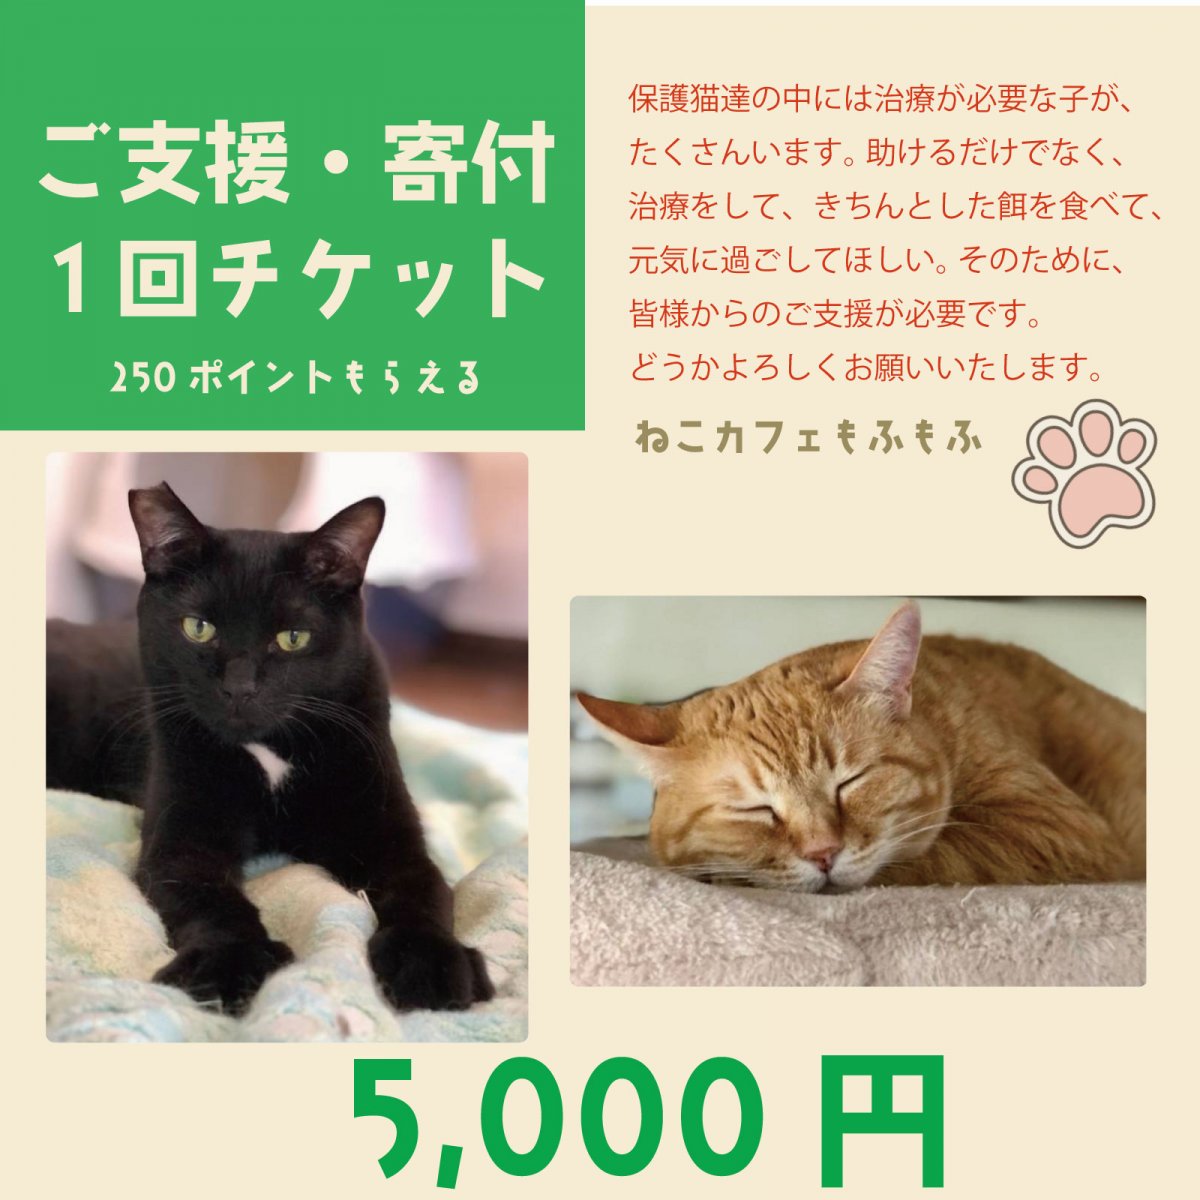 【ご支援・寄付チケット 5,000円】 保護猫活動費へのご支援代 保護猫譲渡型ねこカフェもふもふ